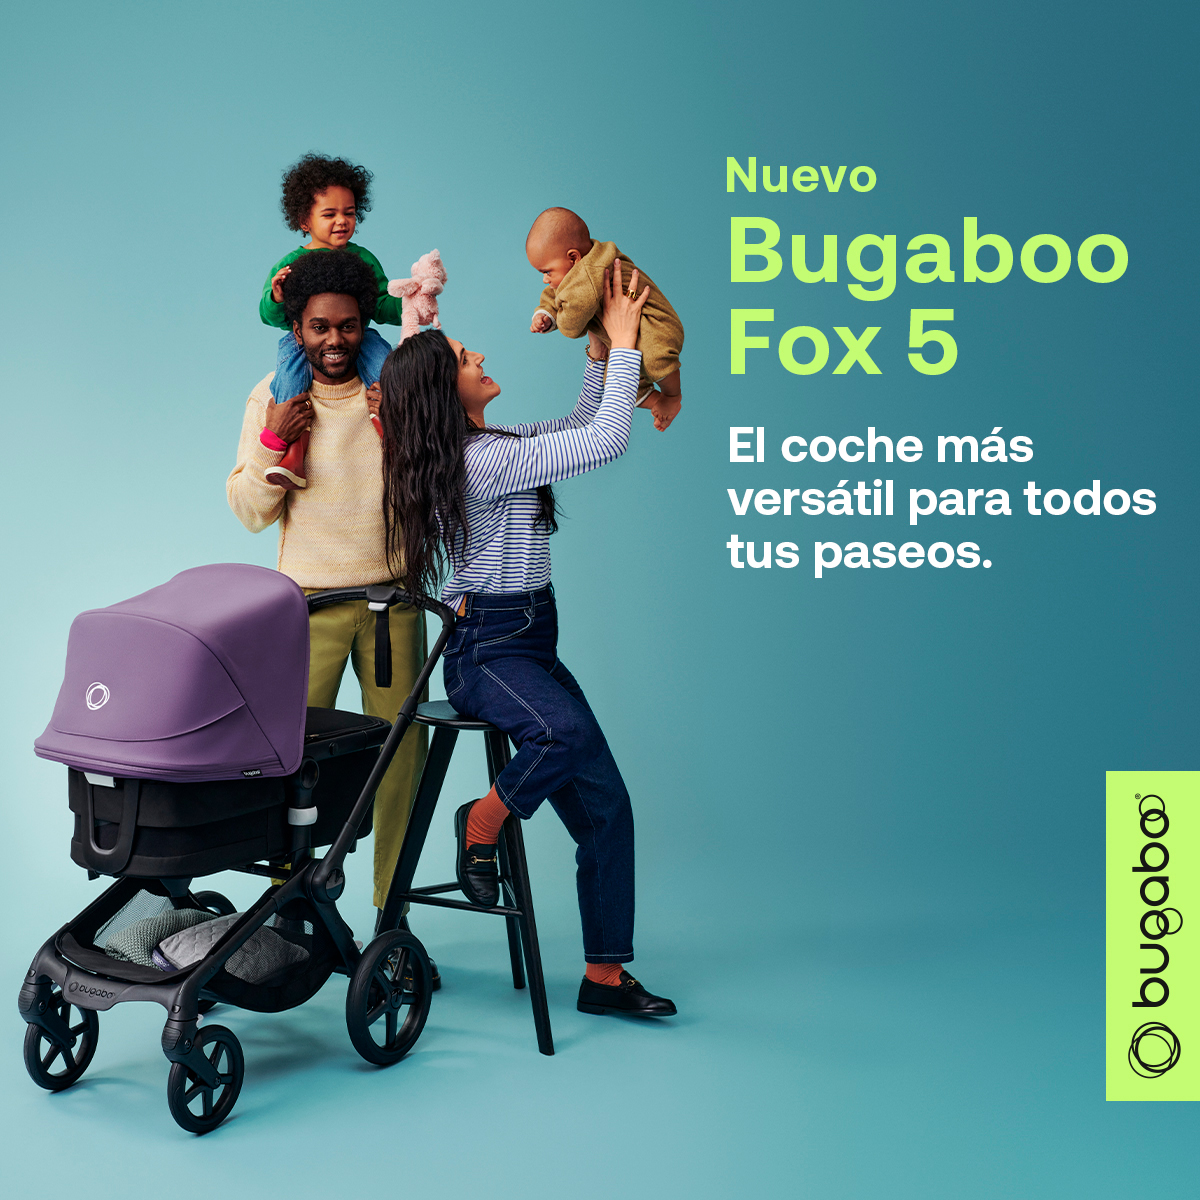 Saco de Silla BUGABOO Nuevo Blanco Fresco : Tienda bebe online